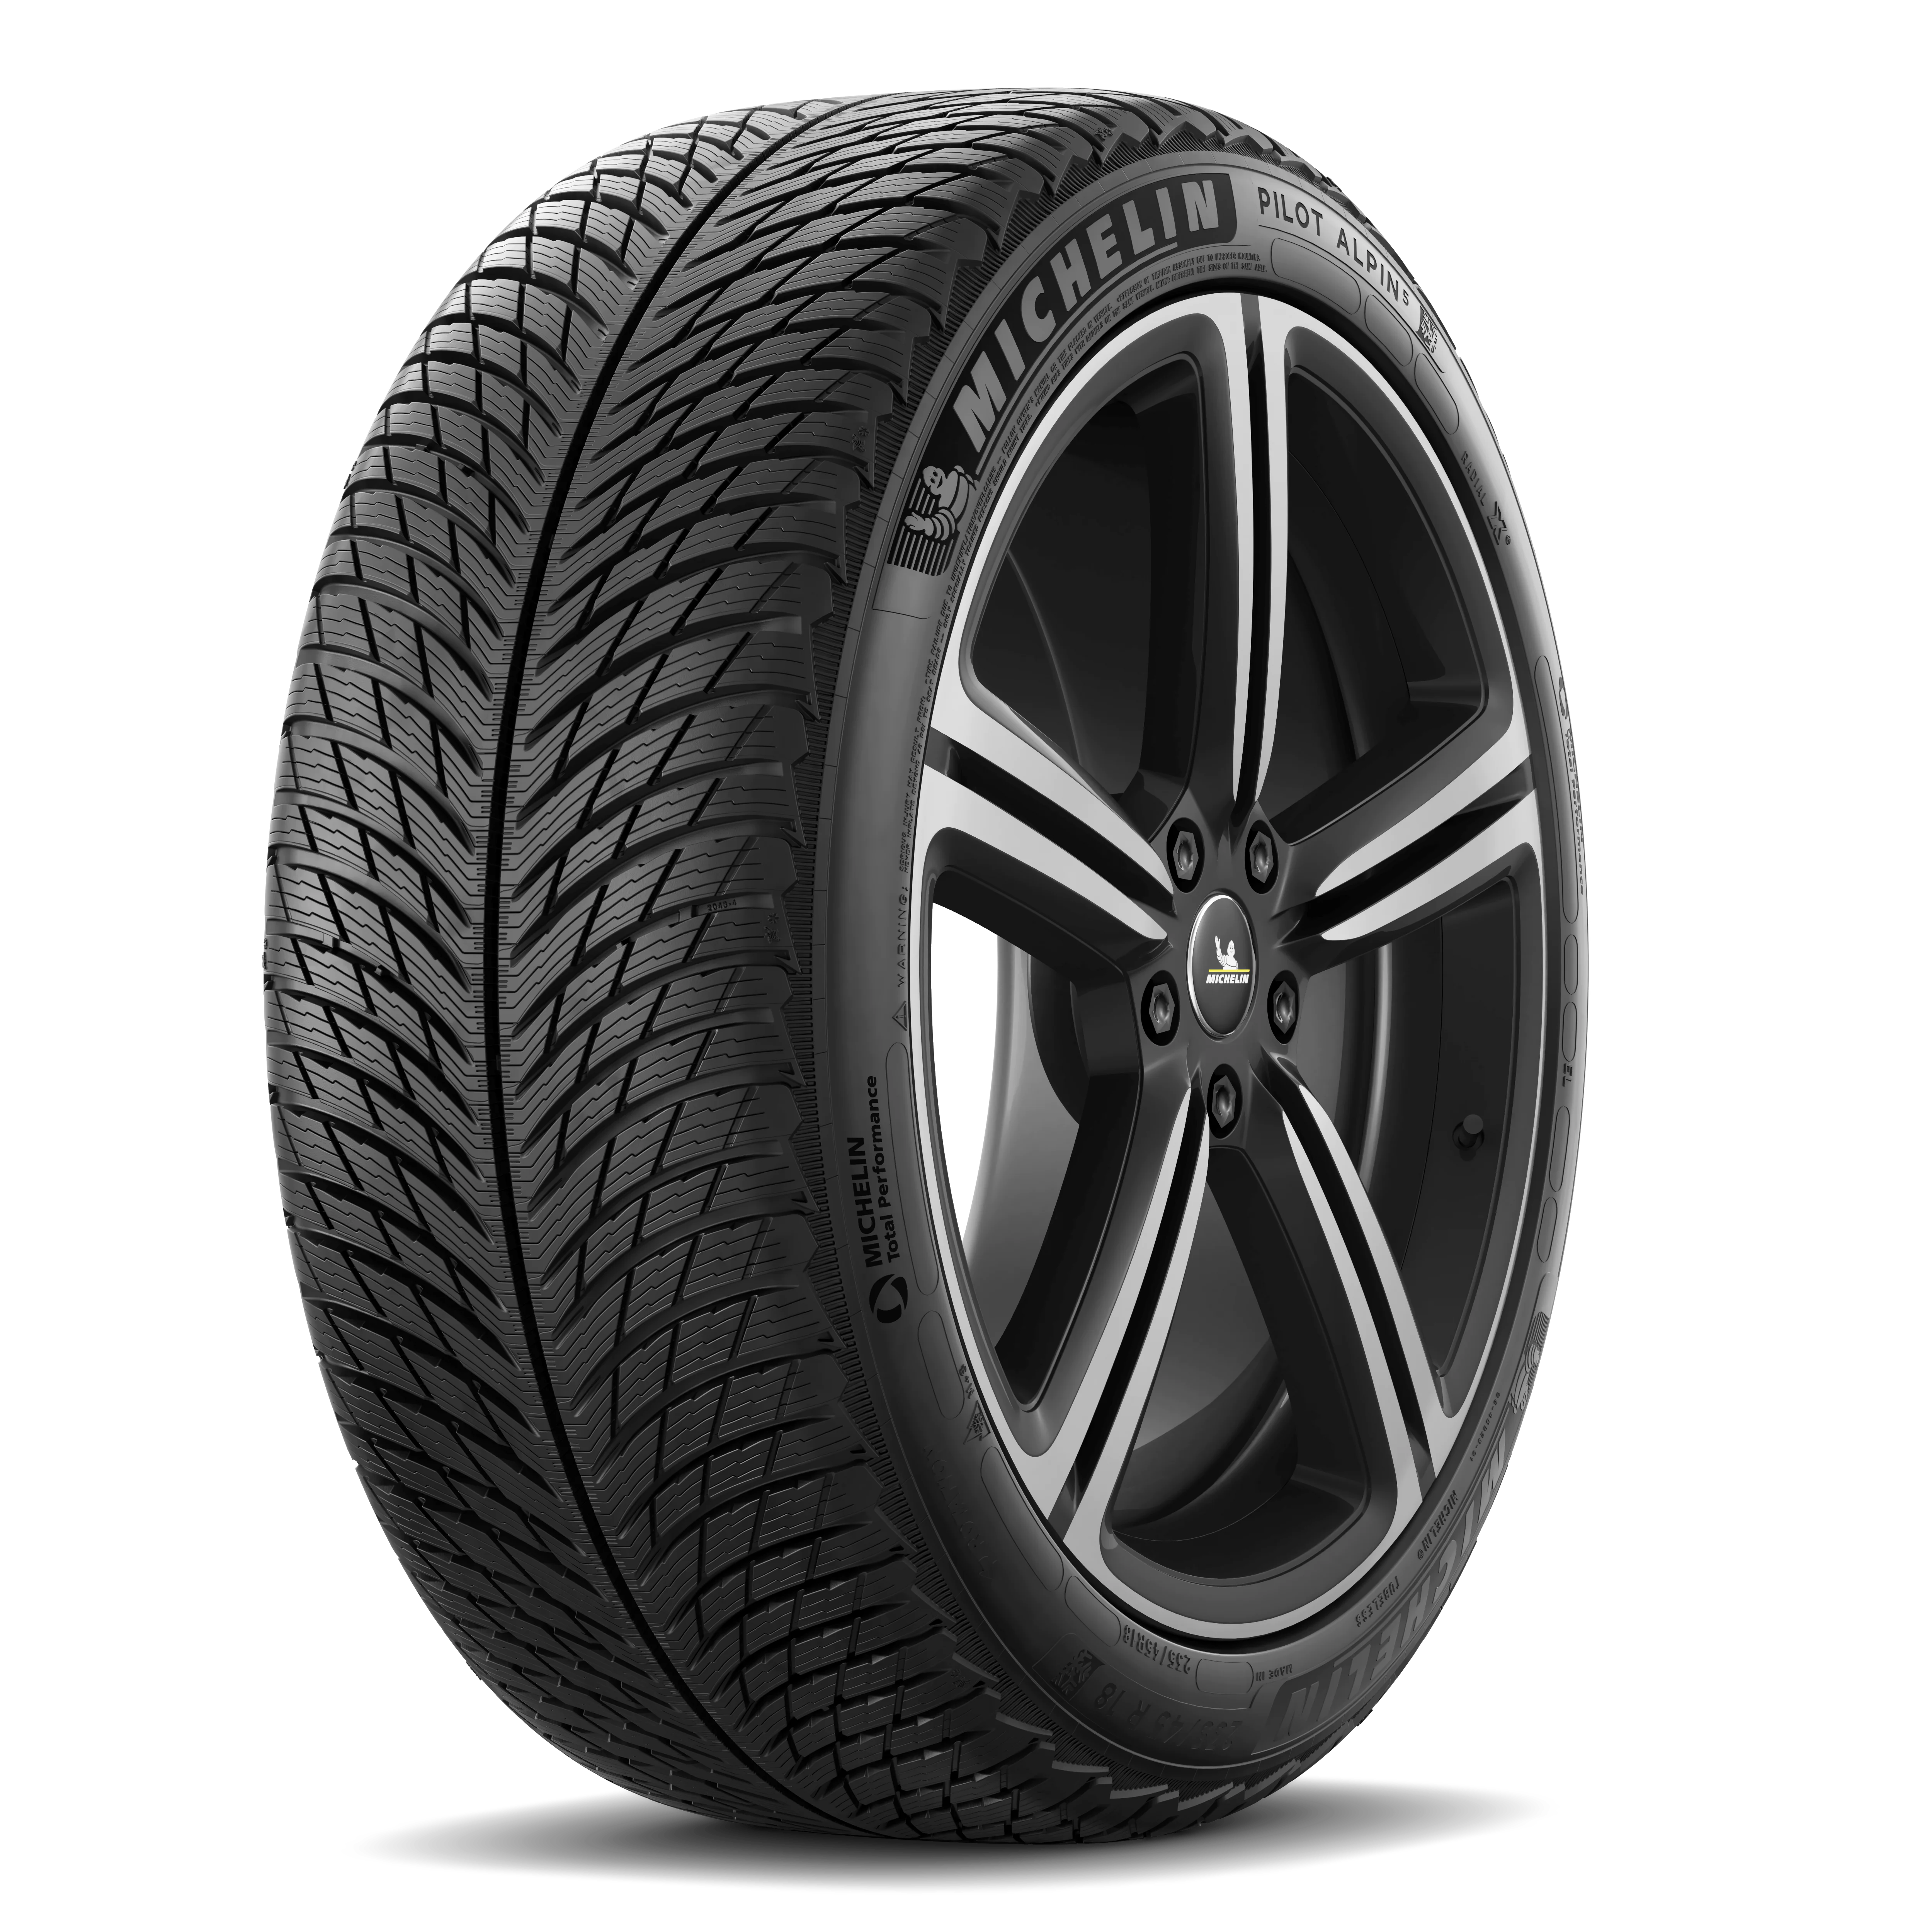 Michelin Michelin 245/45 R18 100V Pilot Alpin 5 FSL XL pneumatici nuovi Invernale 